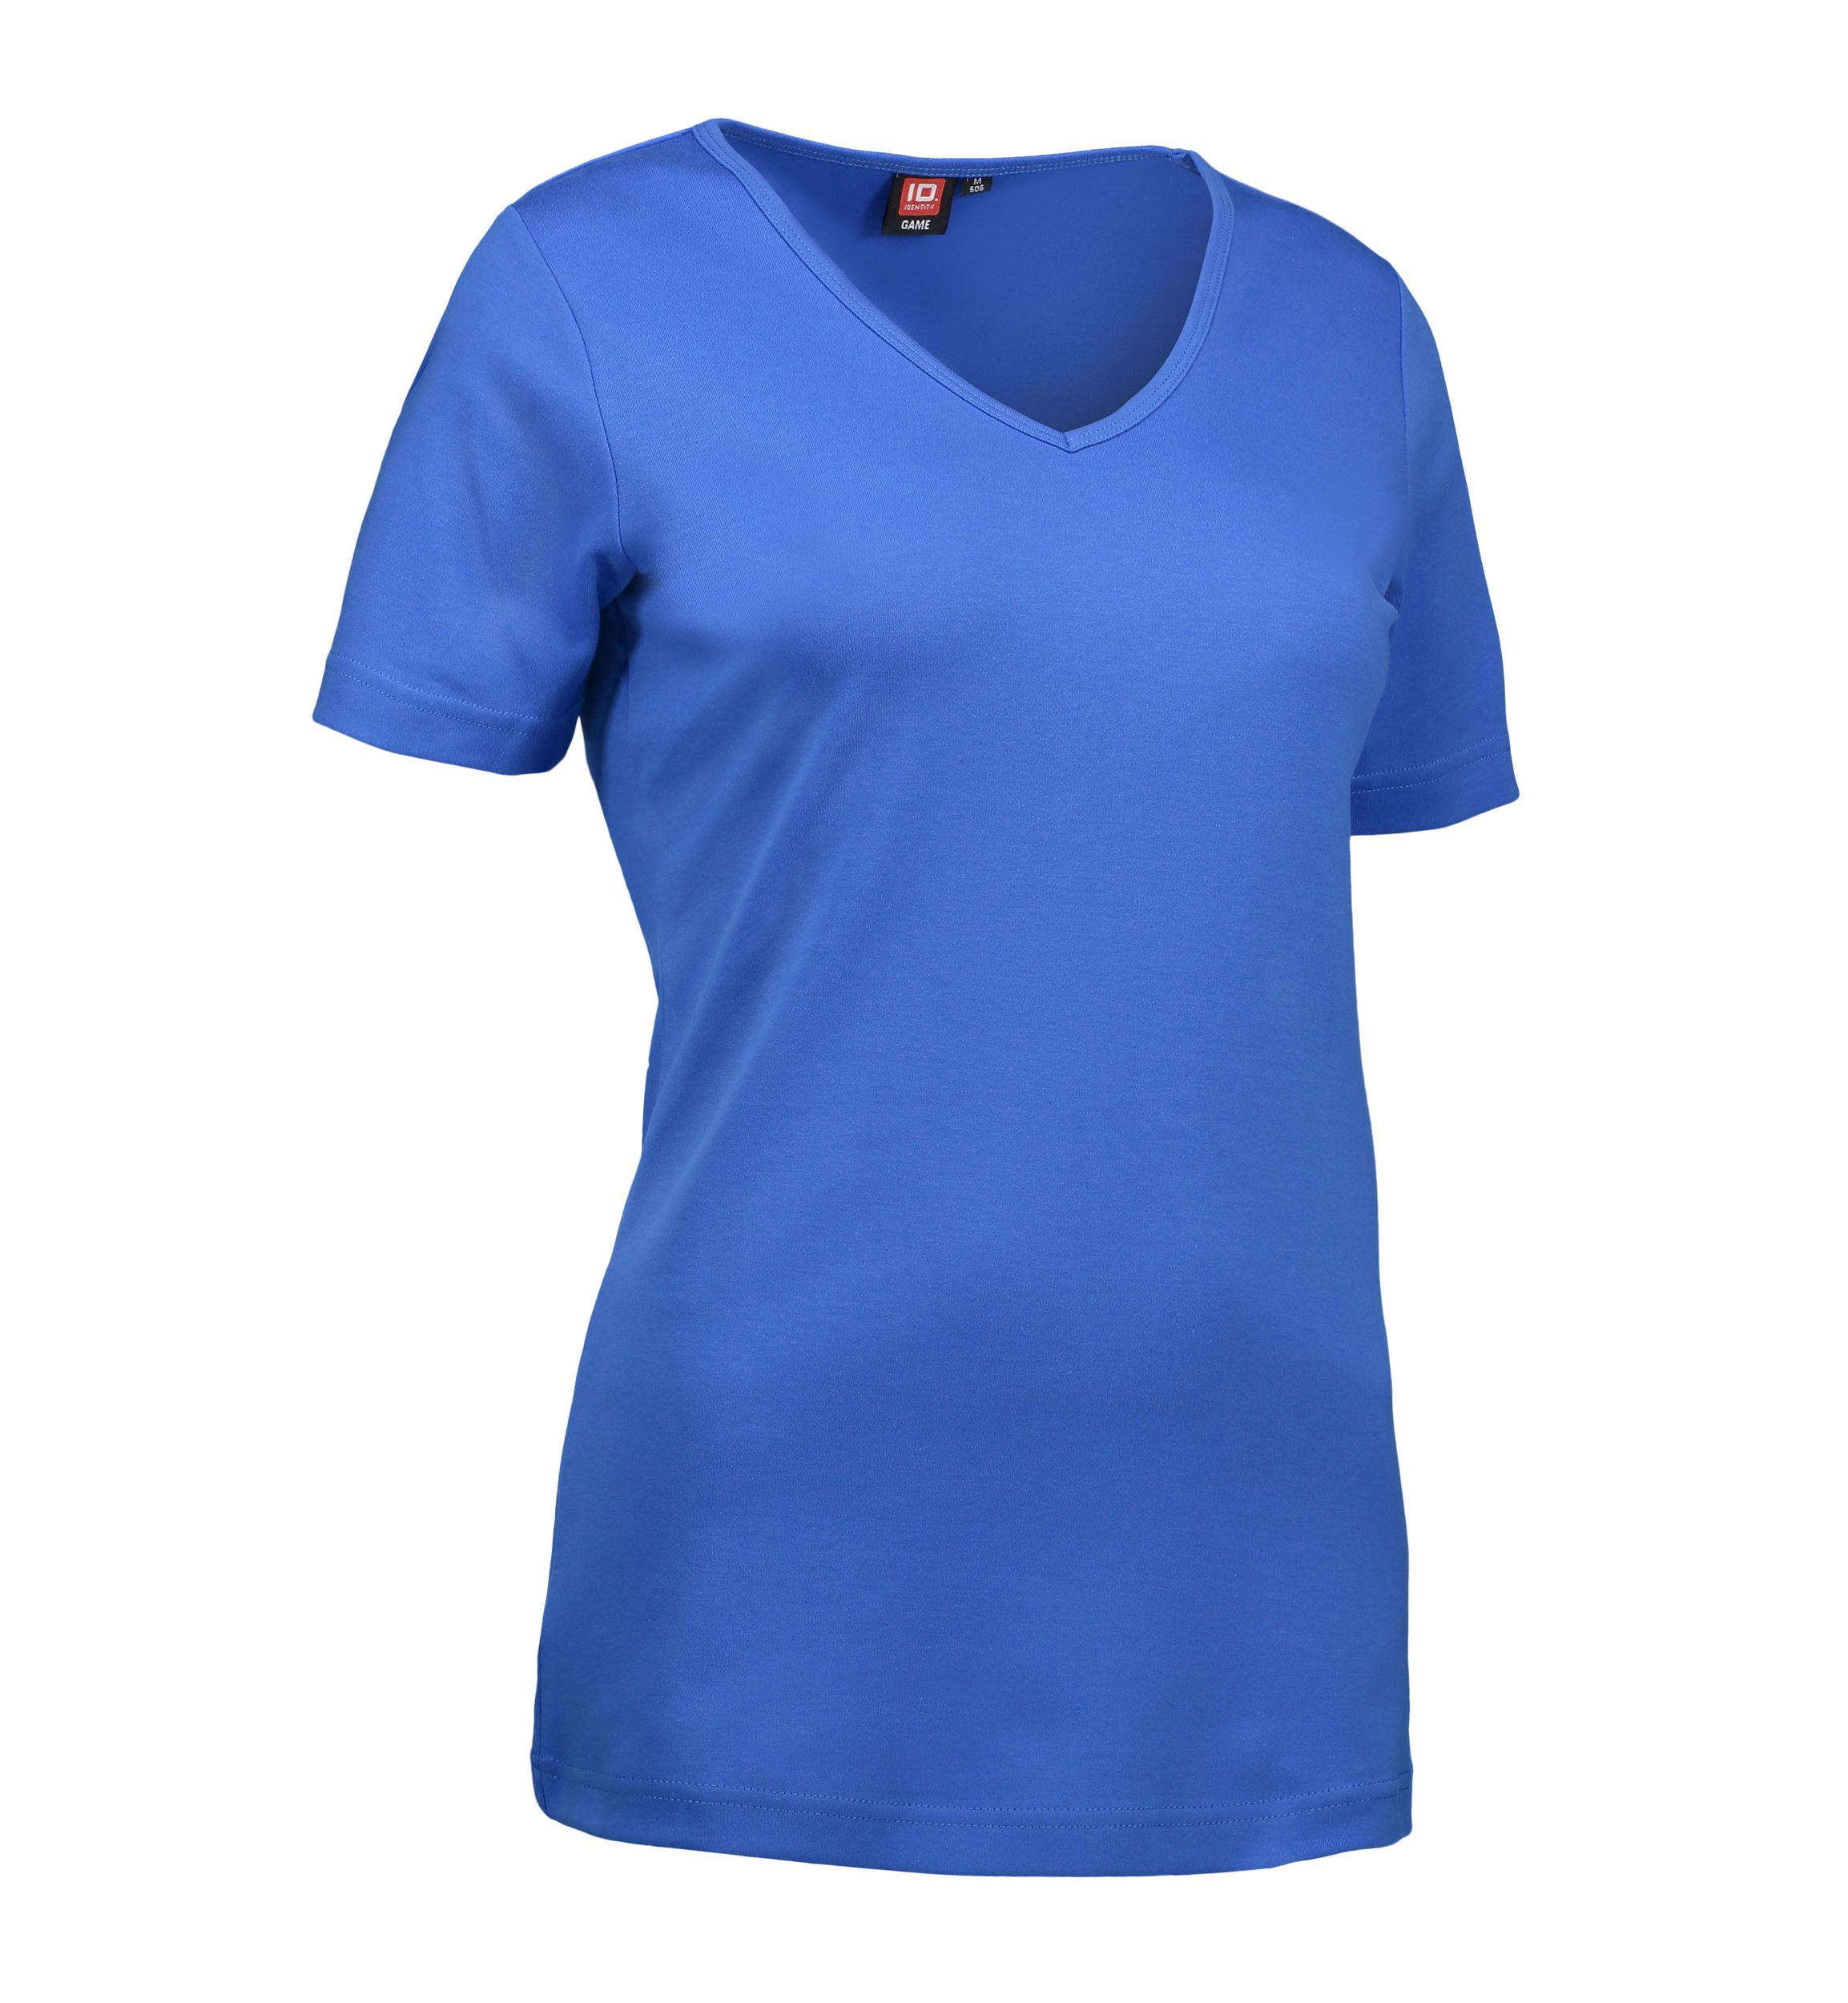 Billede af Blå t-shirt til dame med v-hals - XL hos Sygeplejebutikken.dk